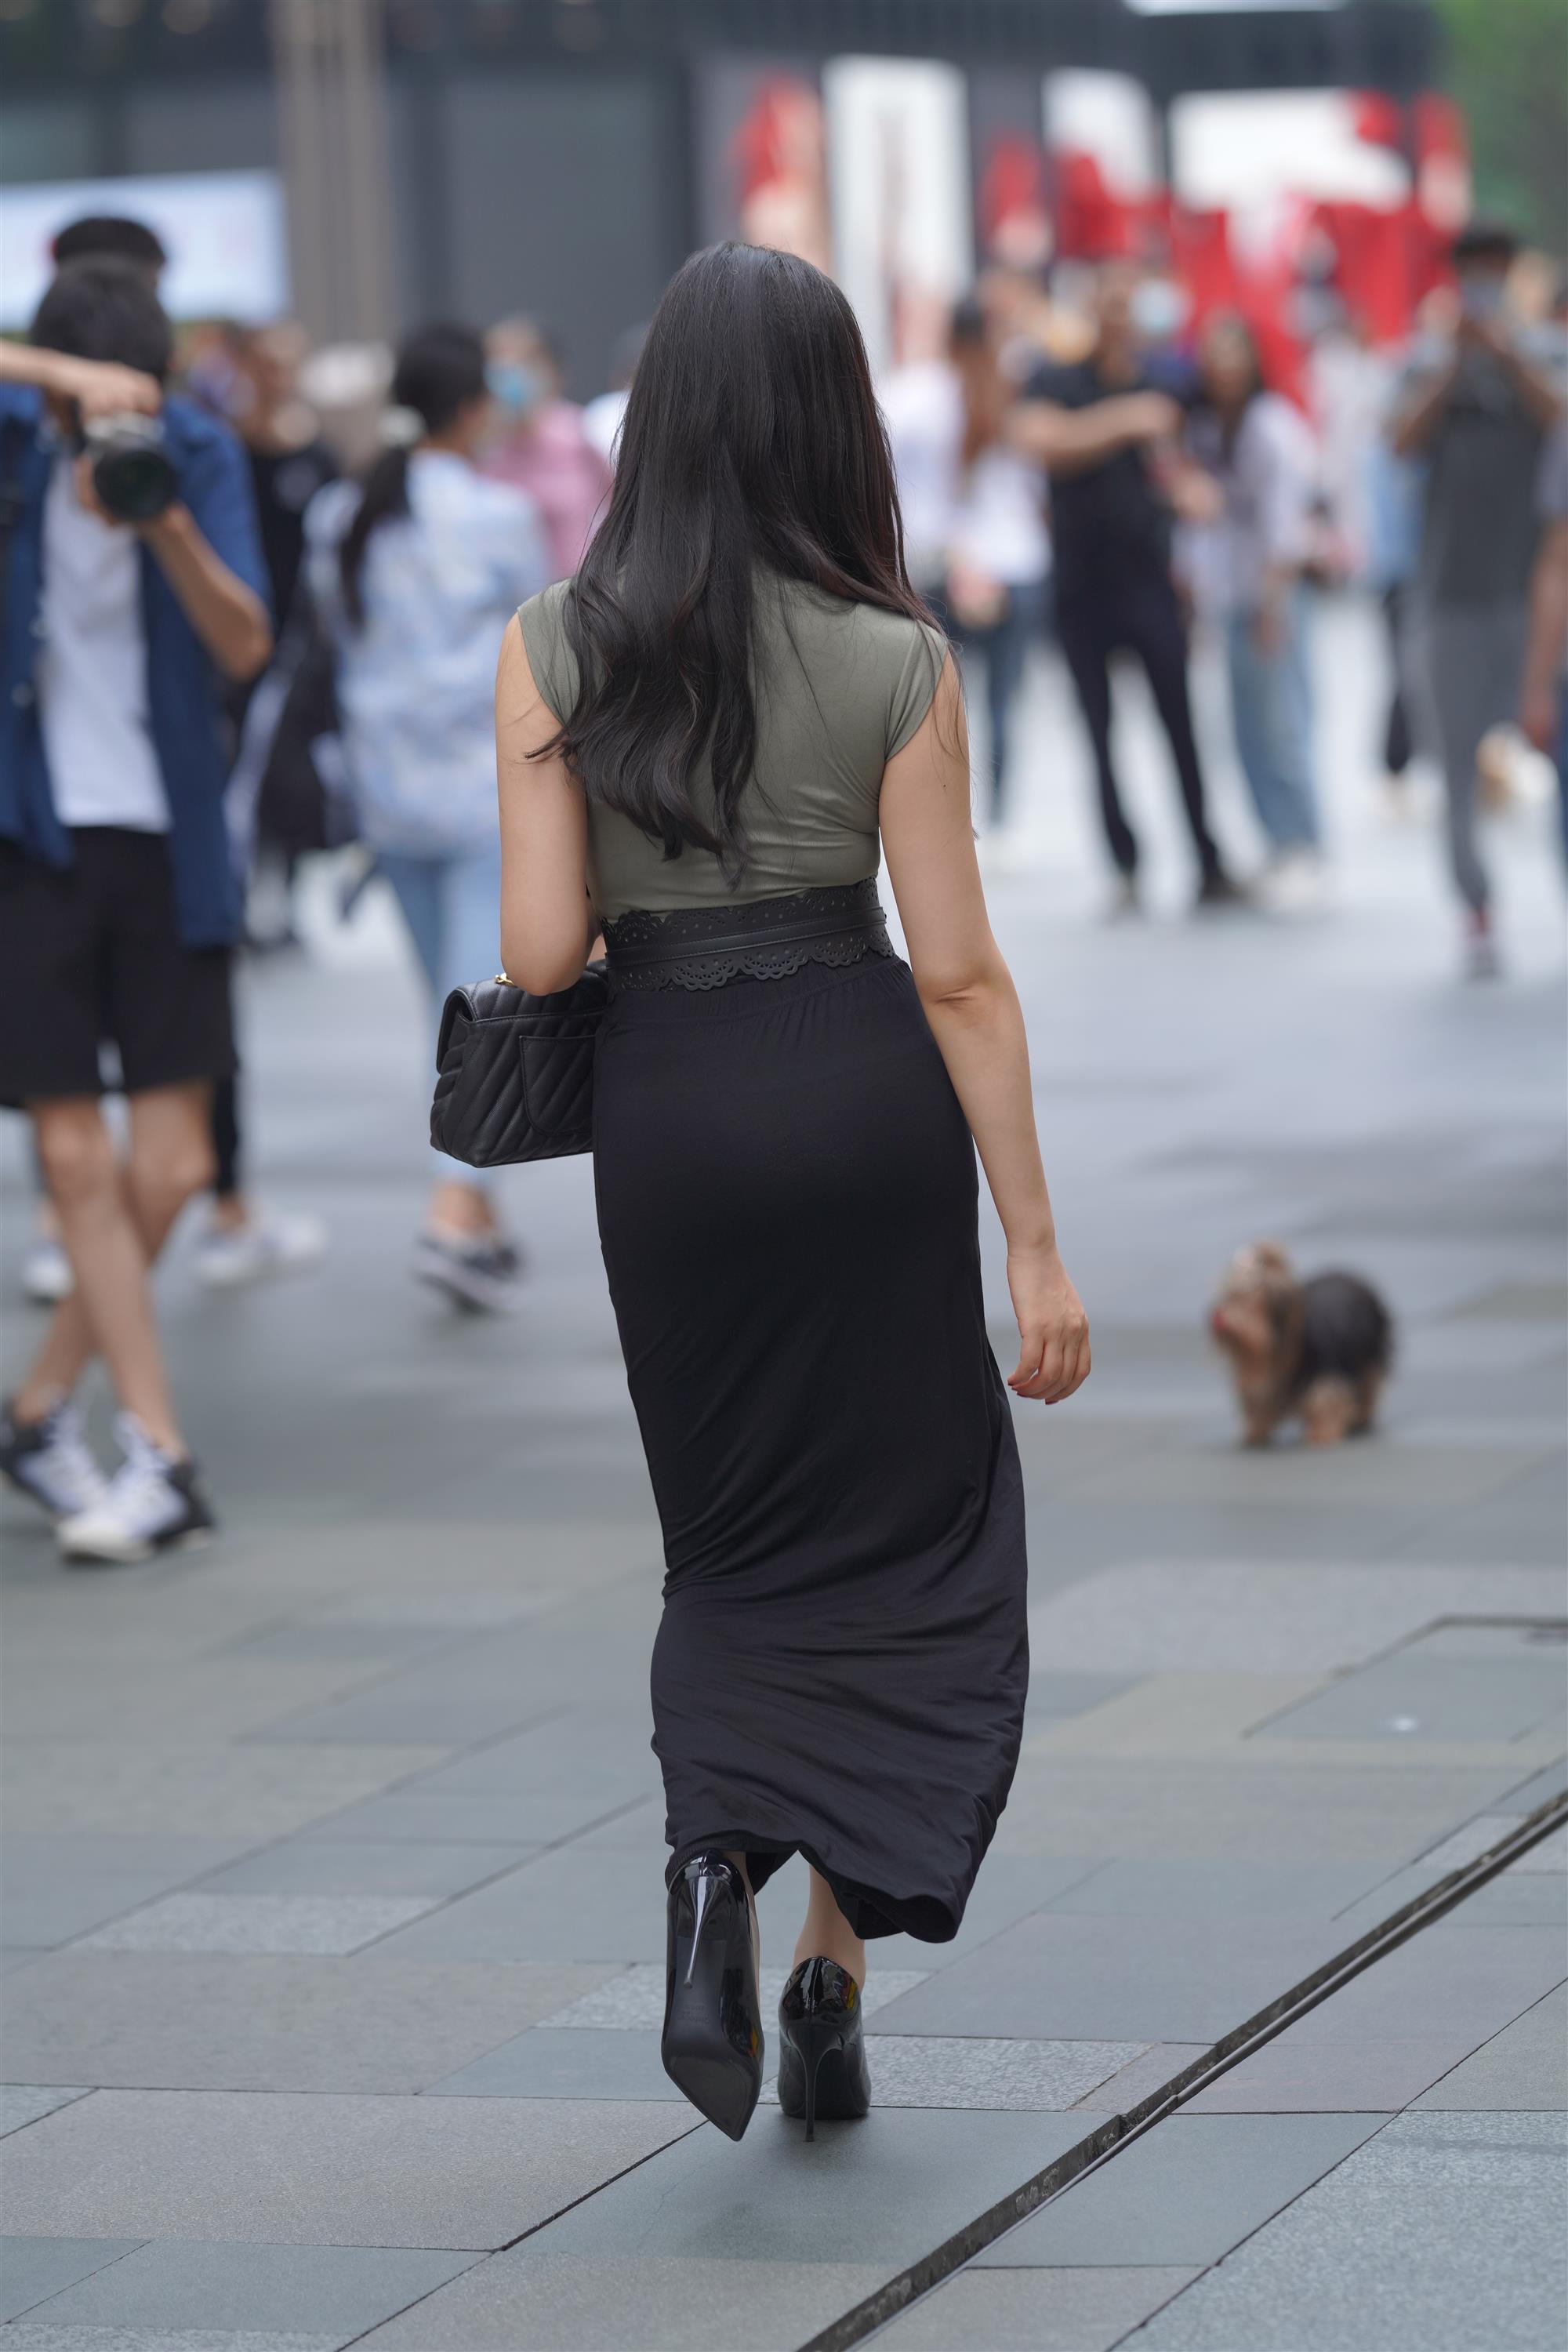 Street 欣儿 Long black skirt - 89.jpg